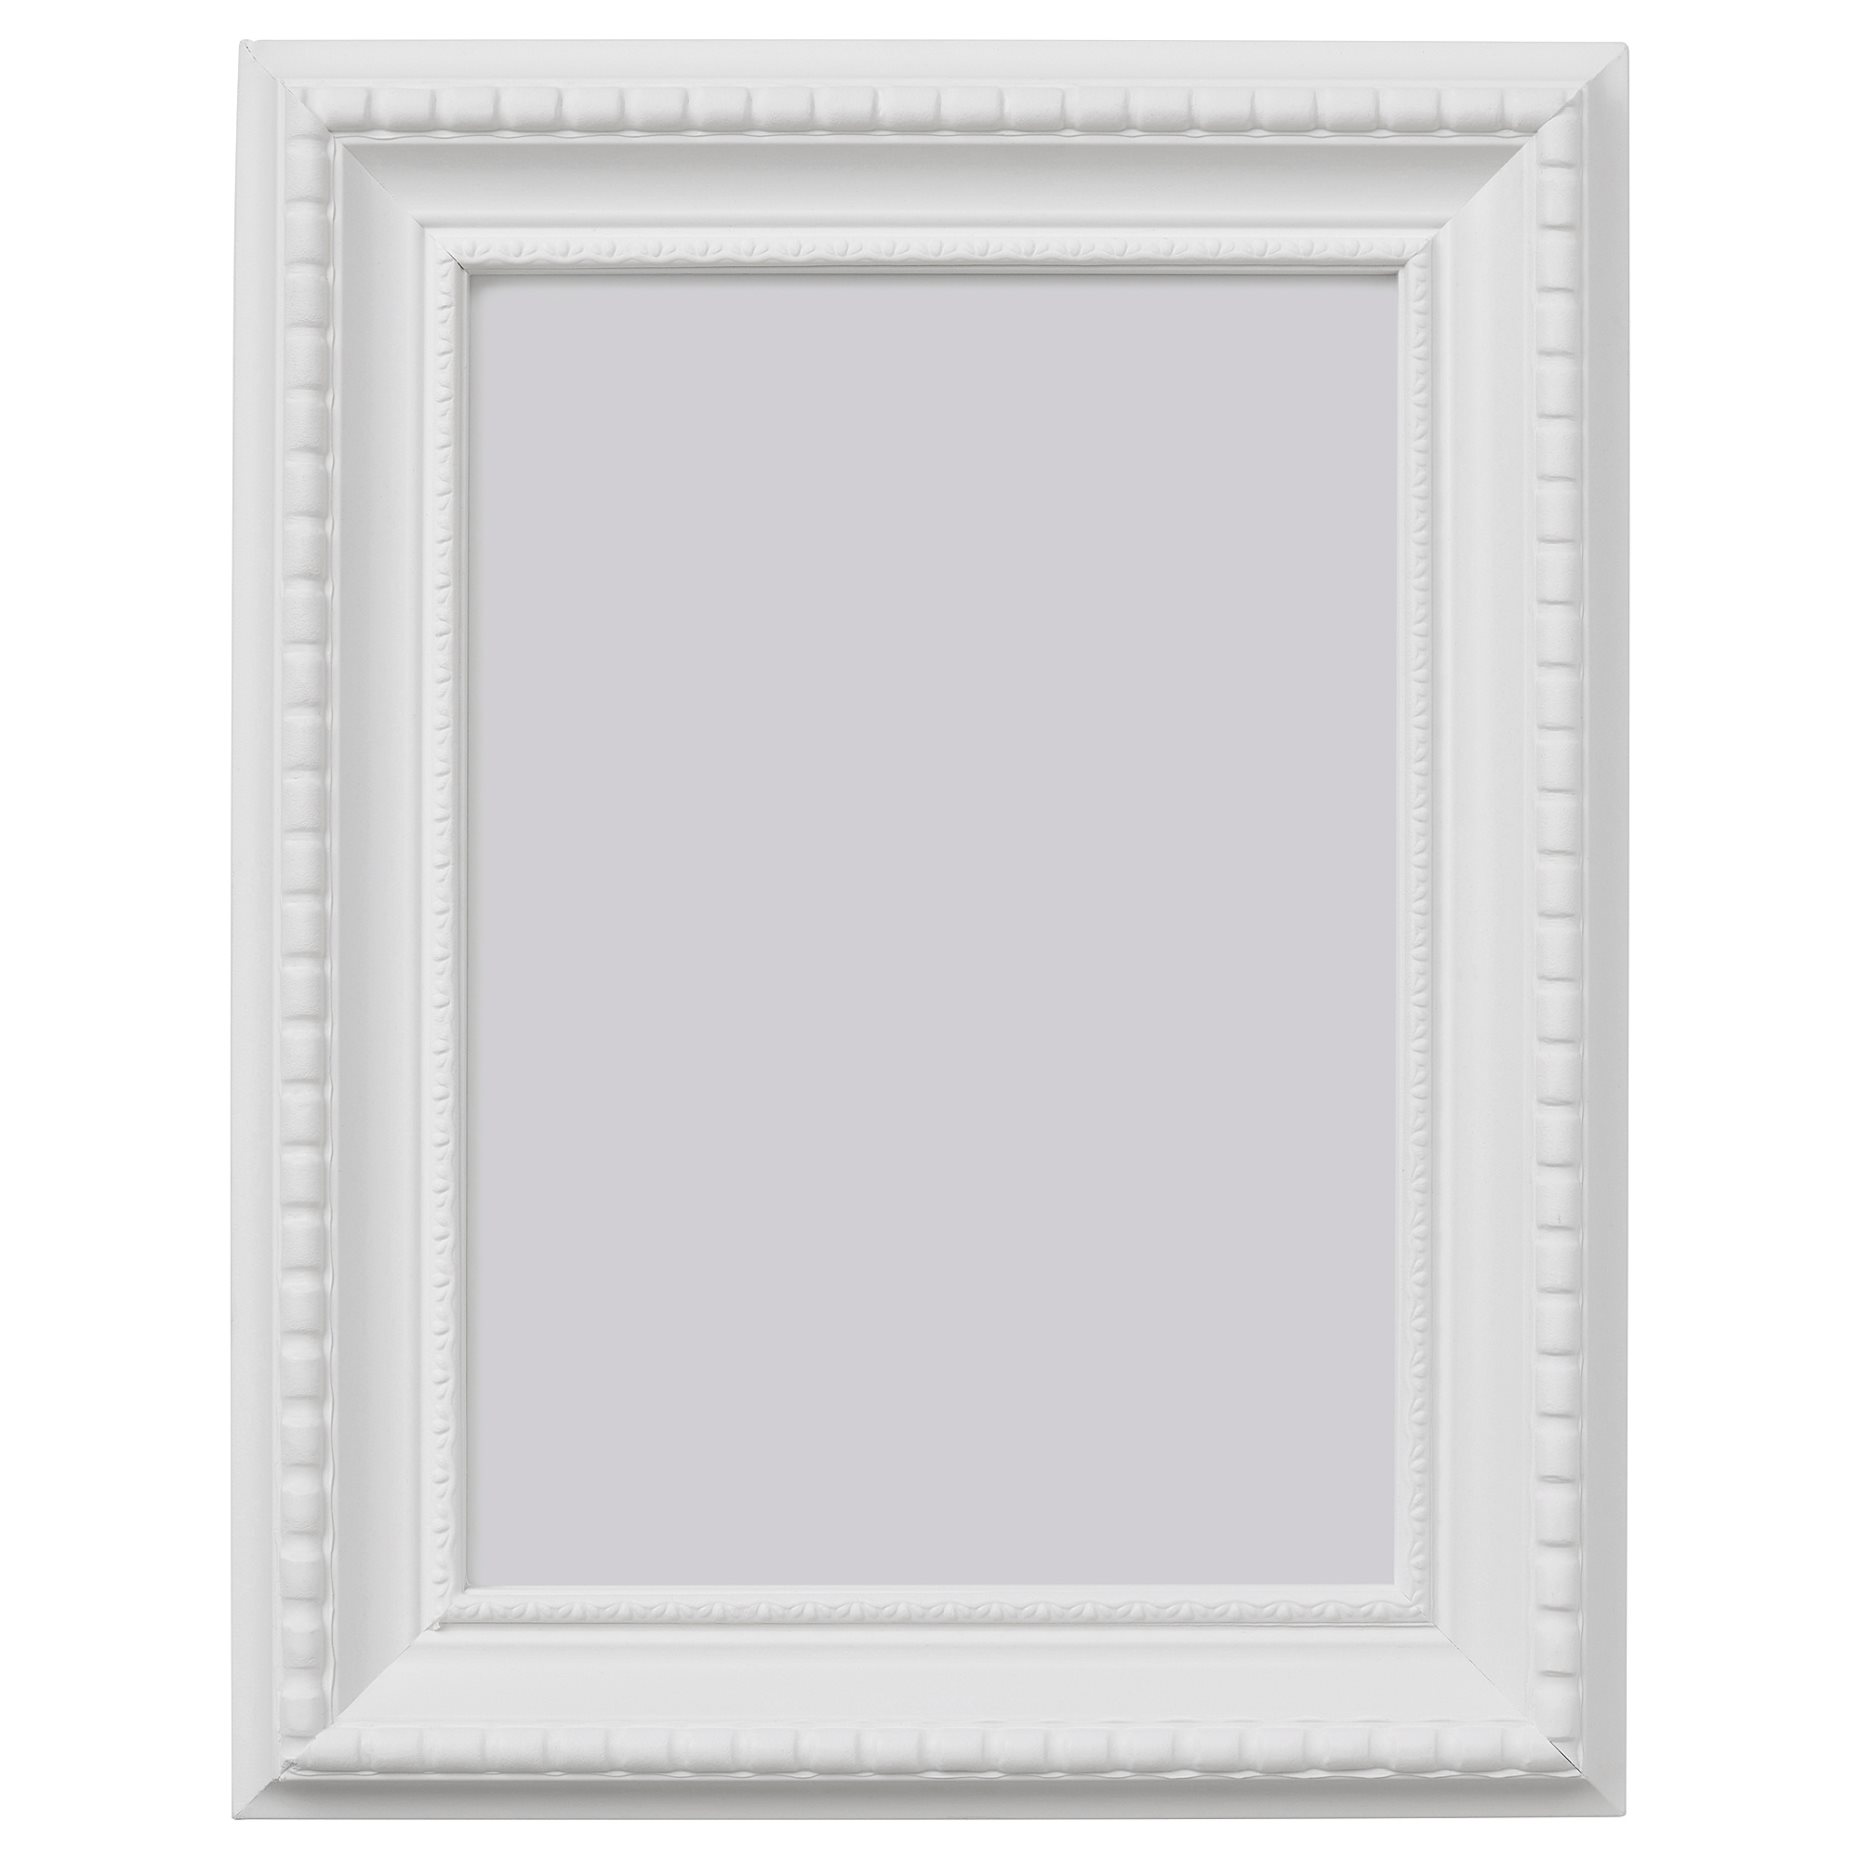 HIMMELSBY, frame, 13x18 cm, 604.668.35